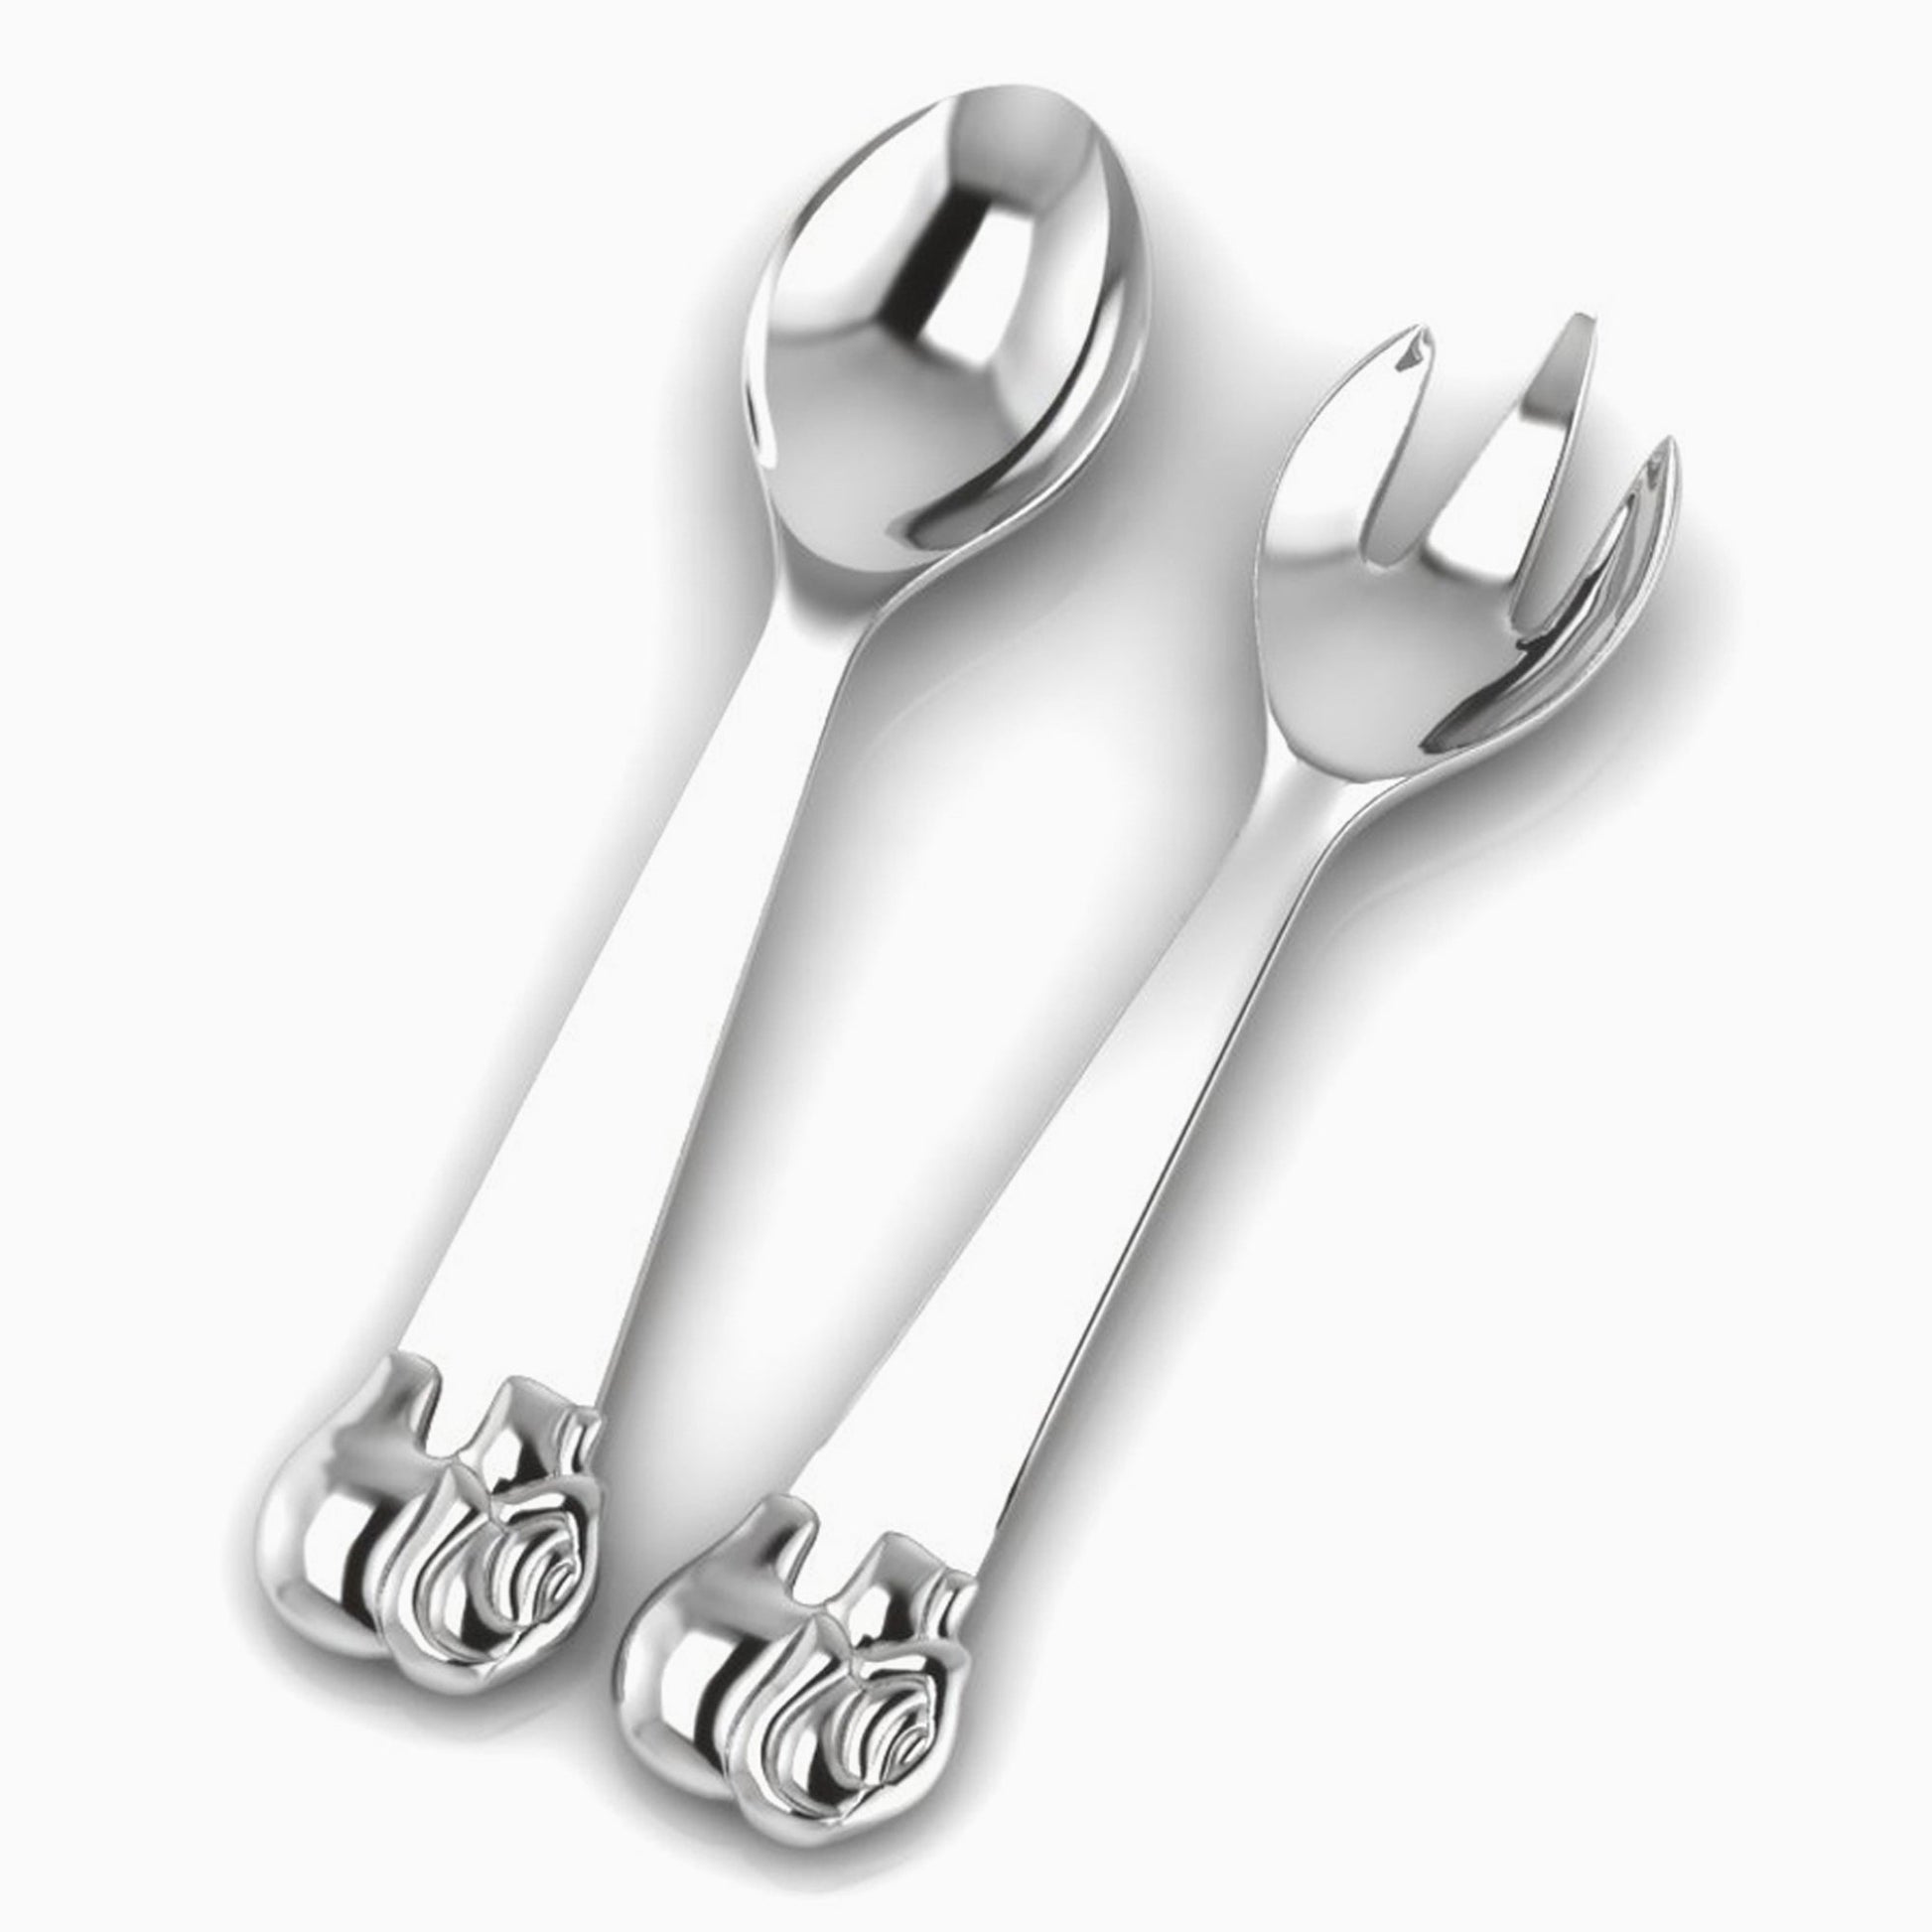 Beaded Sterling Silver Baby Spoon & Fork Set by Krysaliis